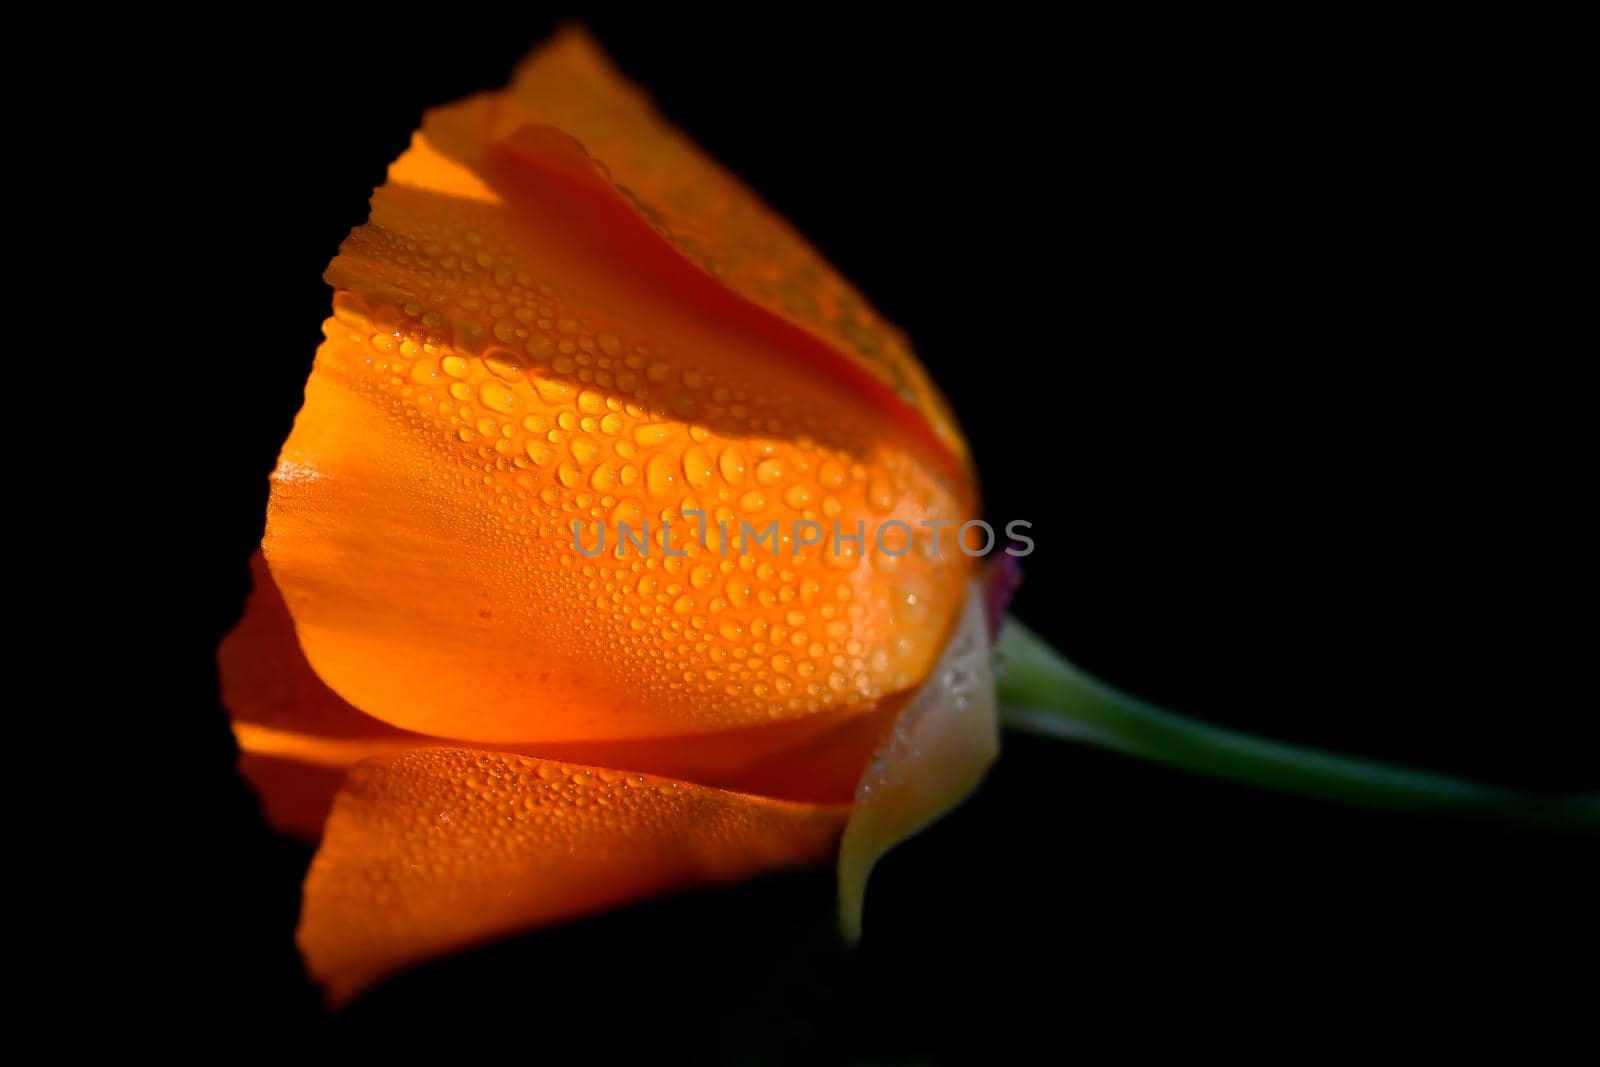 Californian poppy flower with rin drops by Jochen